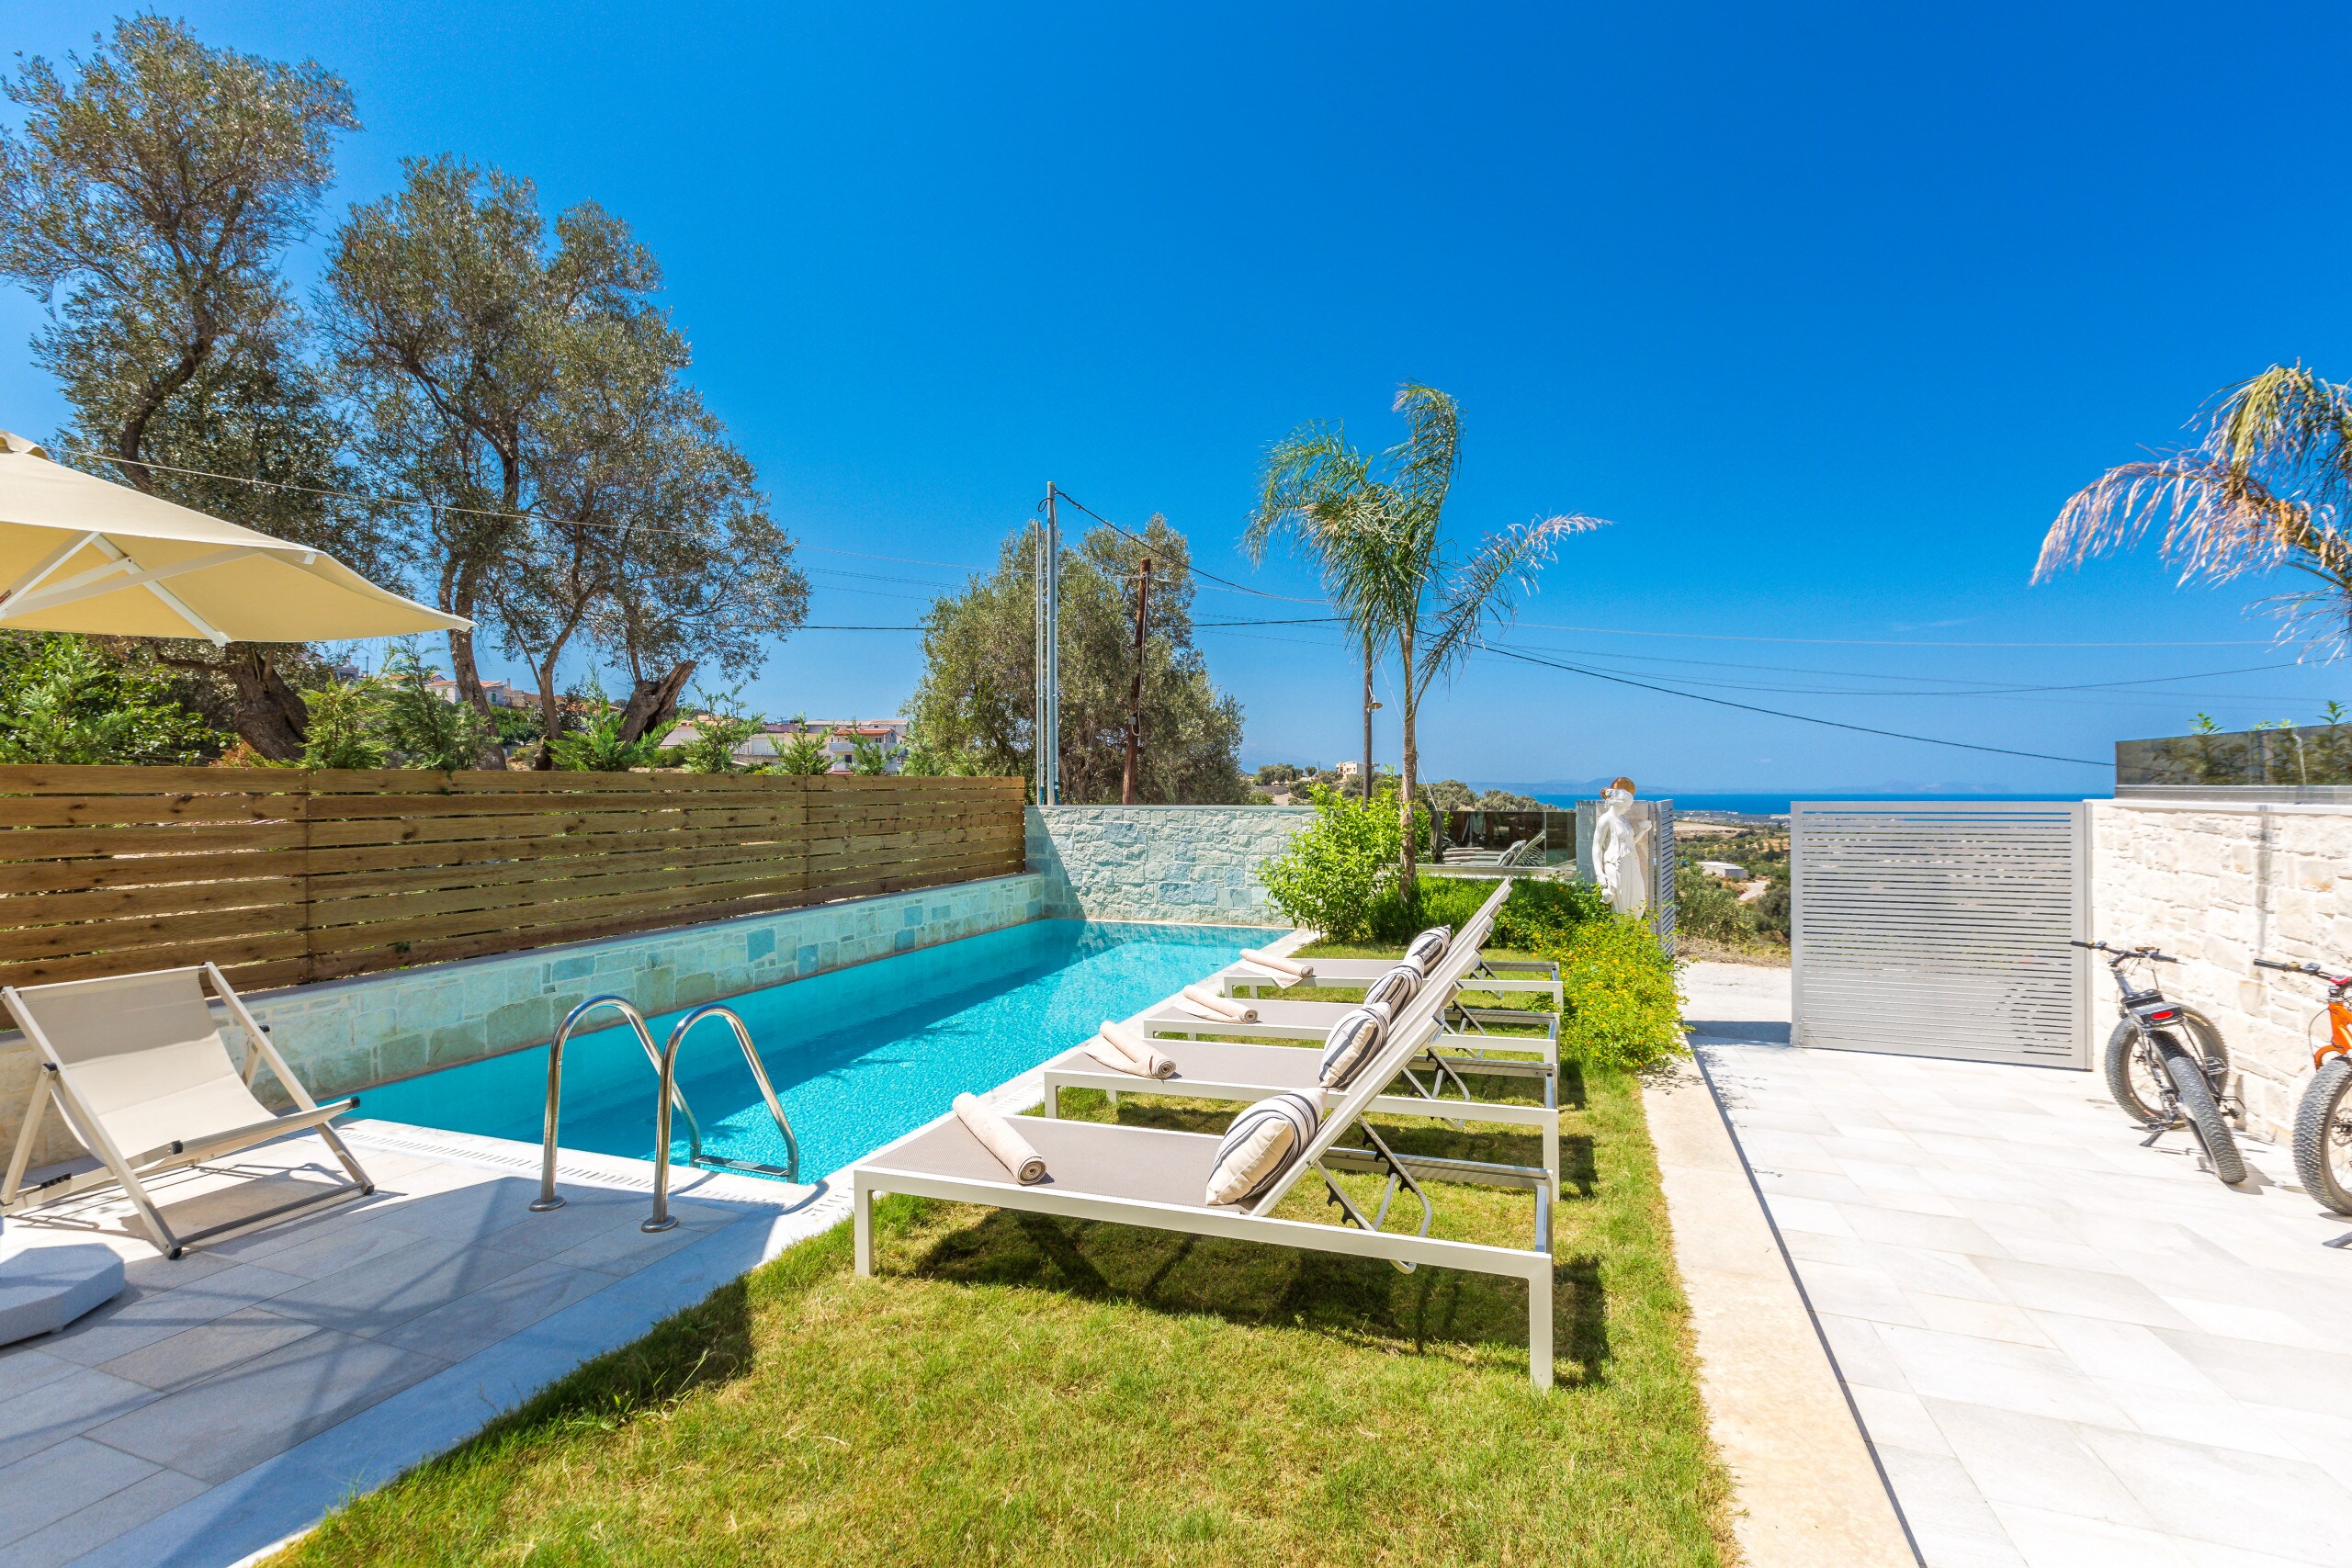 Villa Hera has a 25 m2 private swimming pool